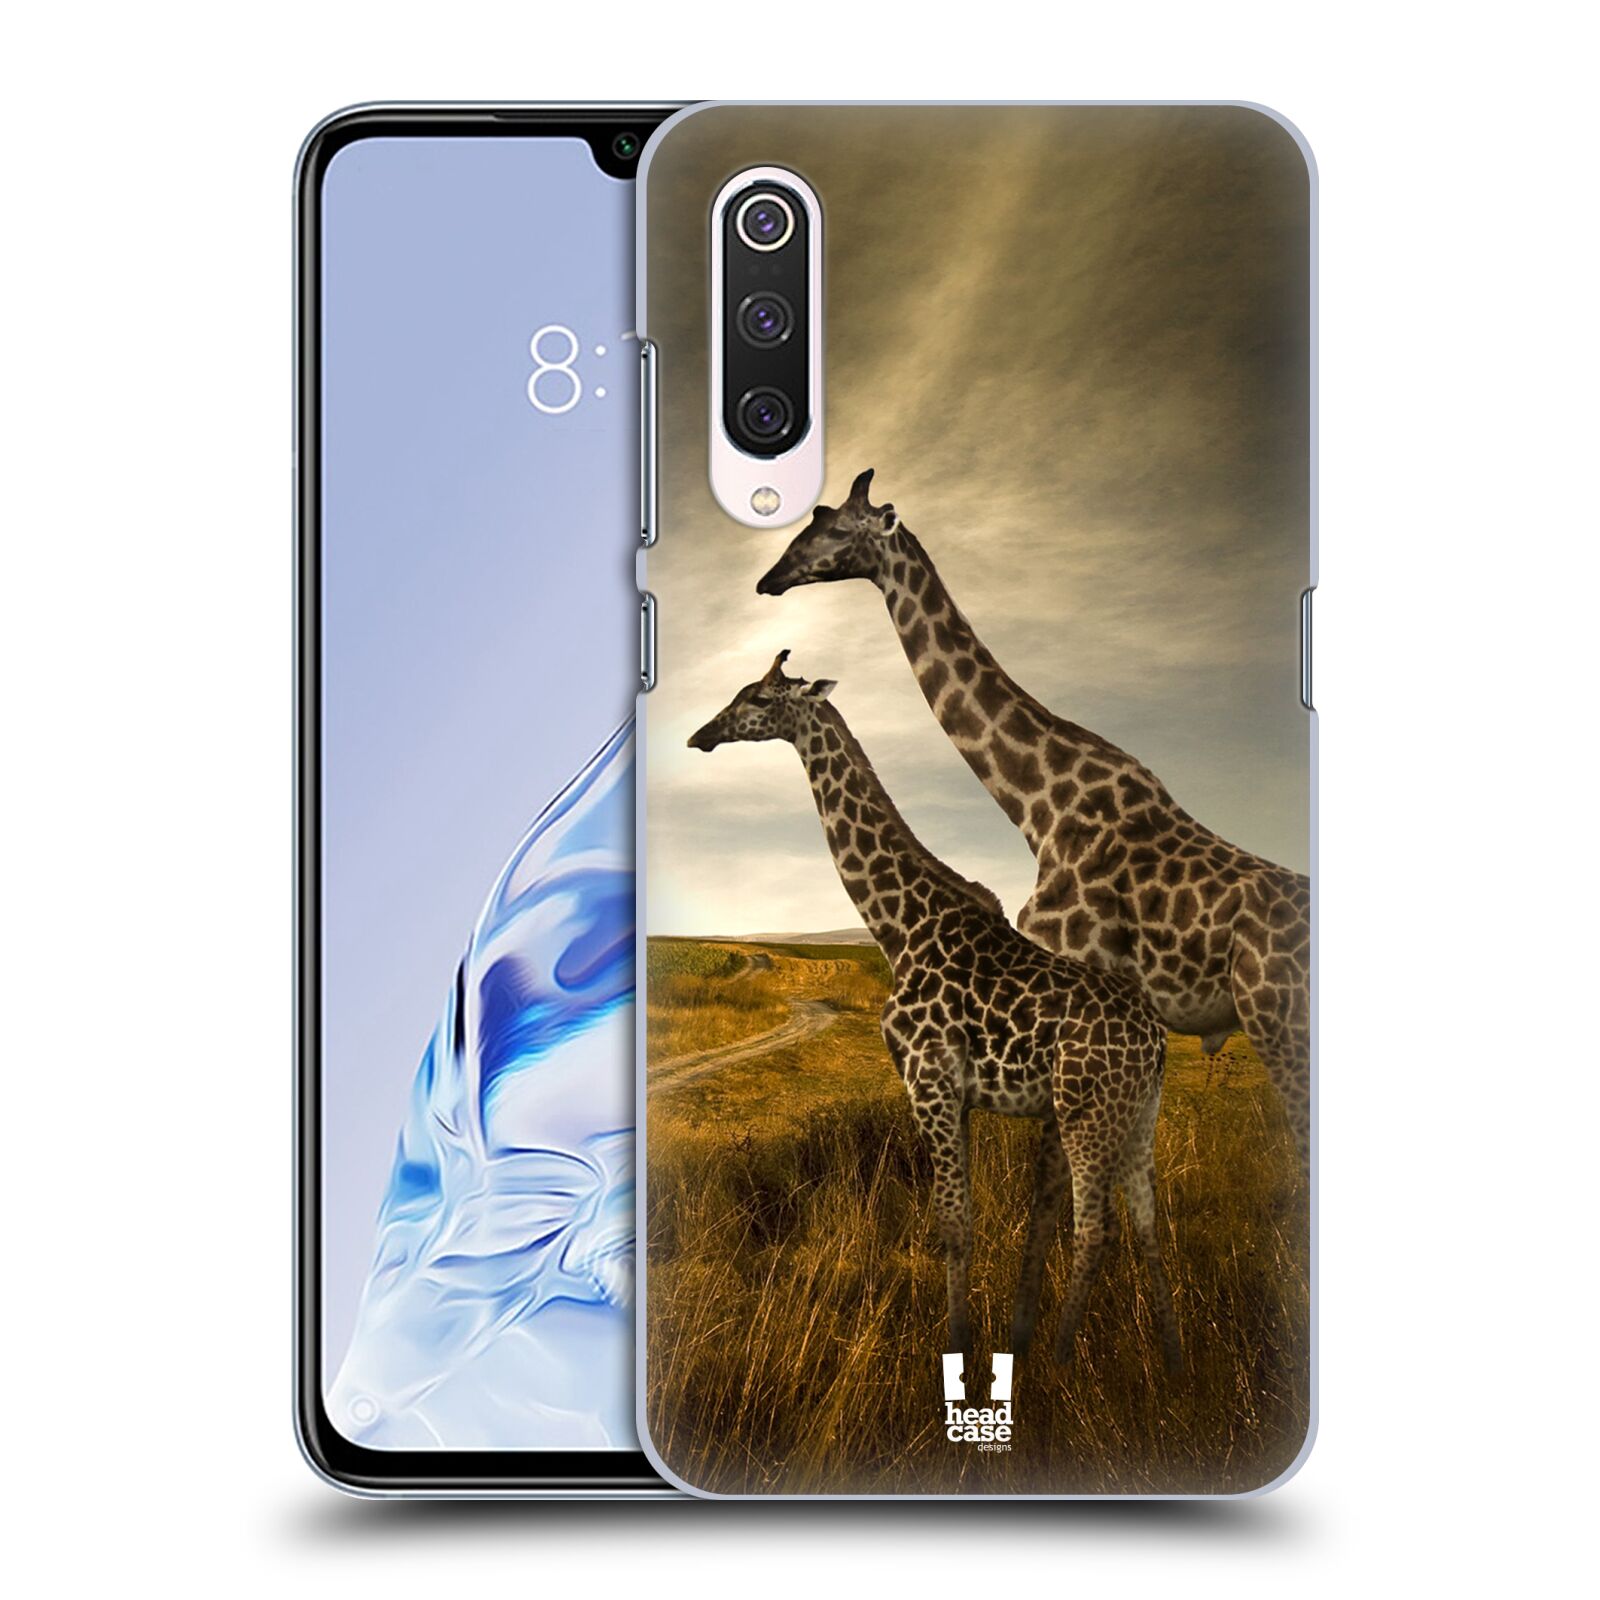 Zadní obal pro mobil Xiaomi Mi 9 PRO - HEAD CASE - Svět zvířat žirafy